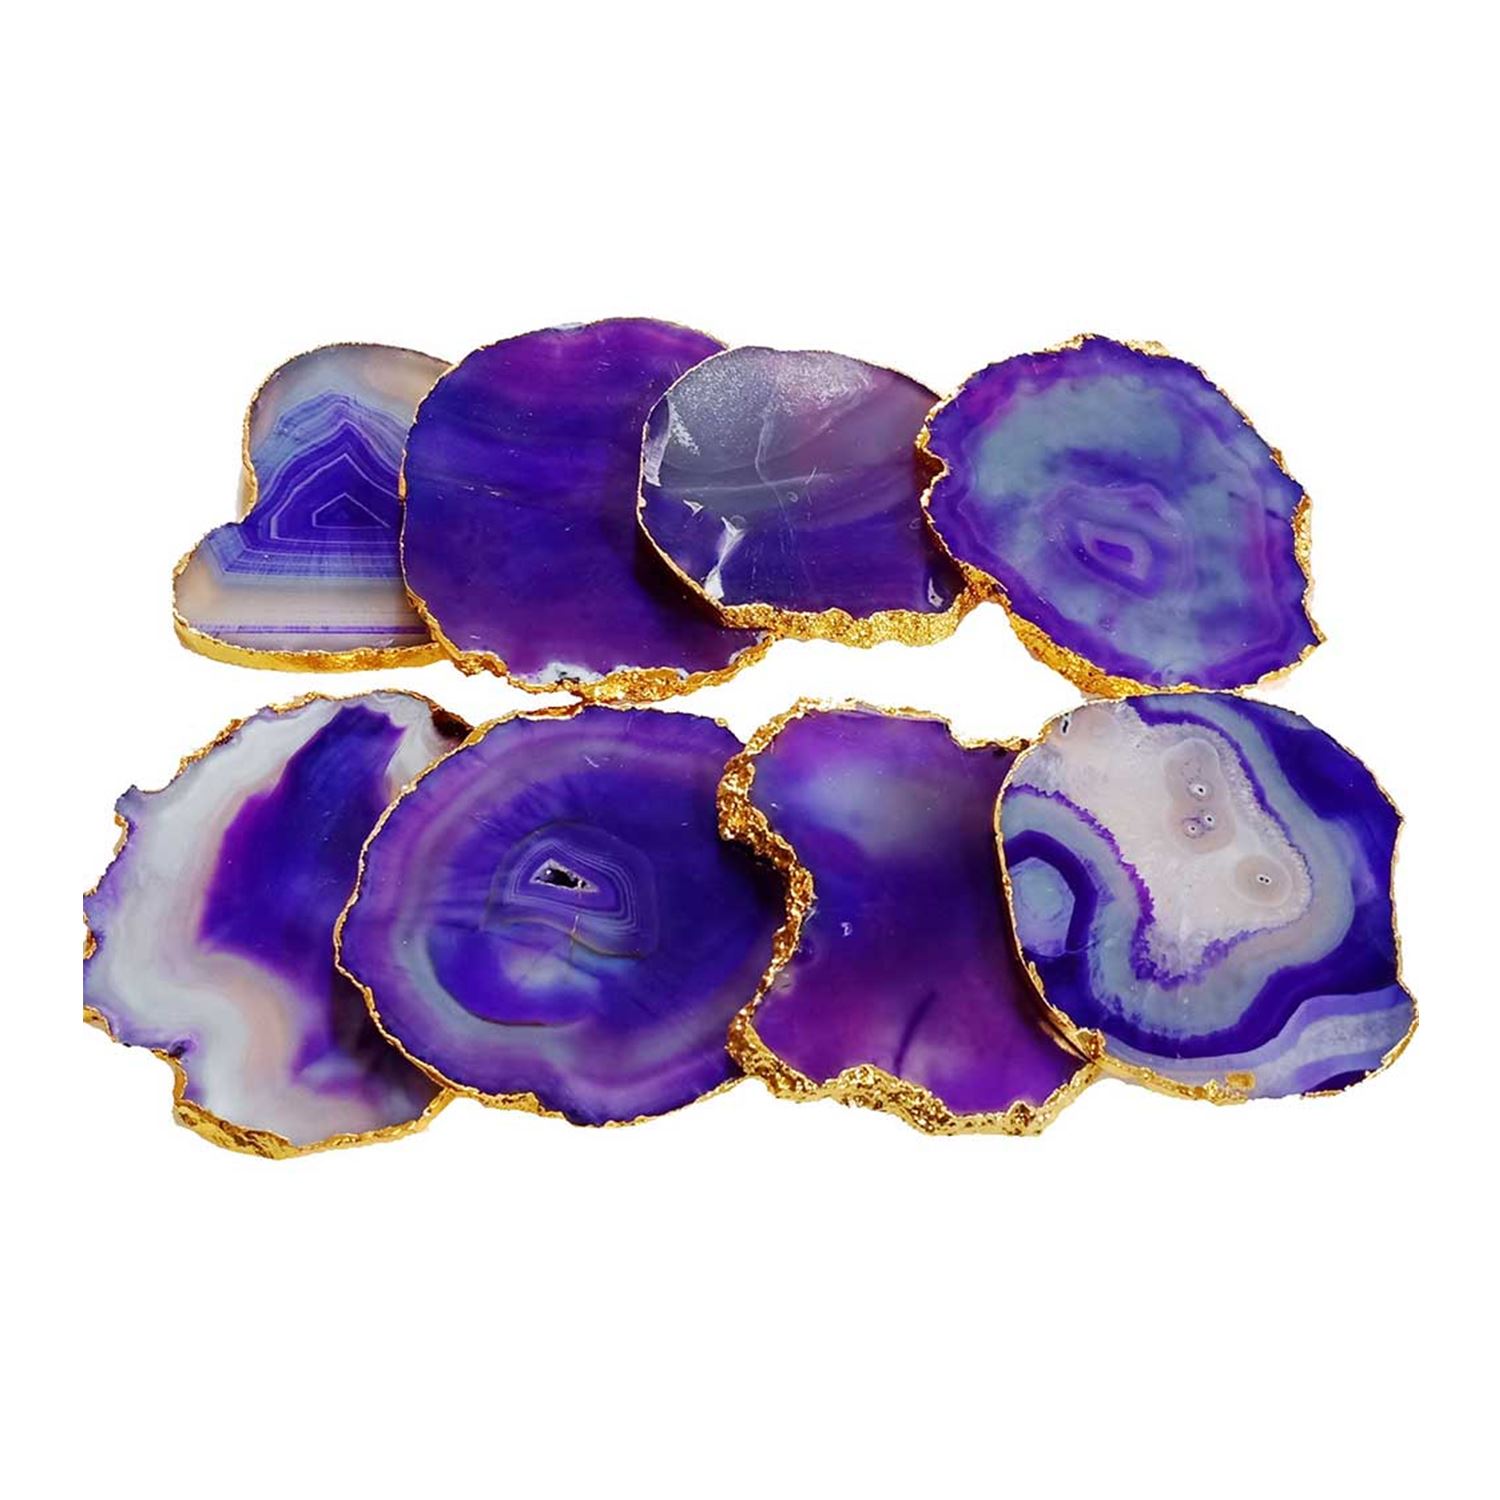 agate-coasters-set-purple